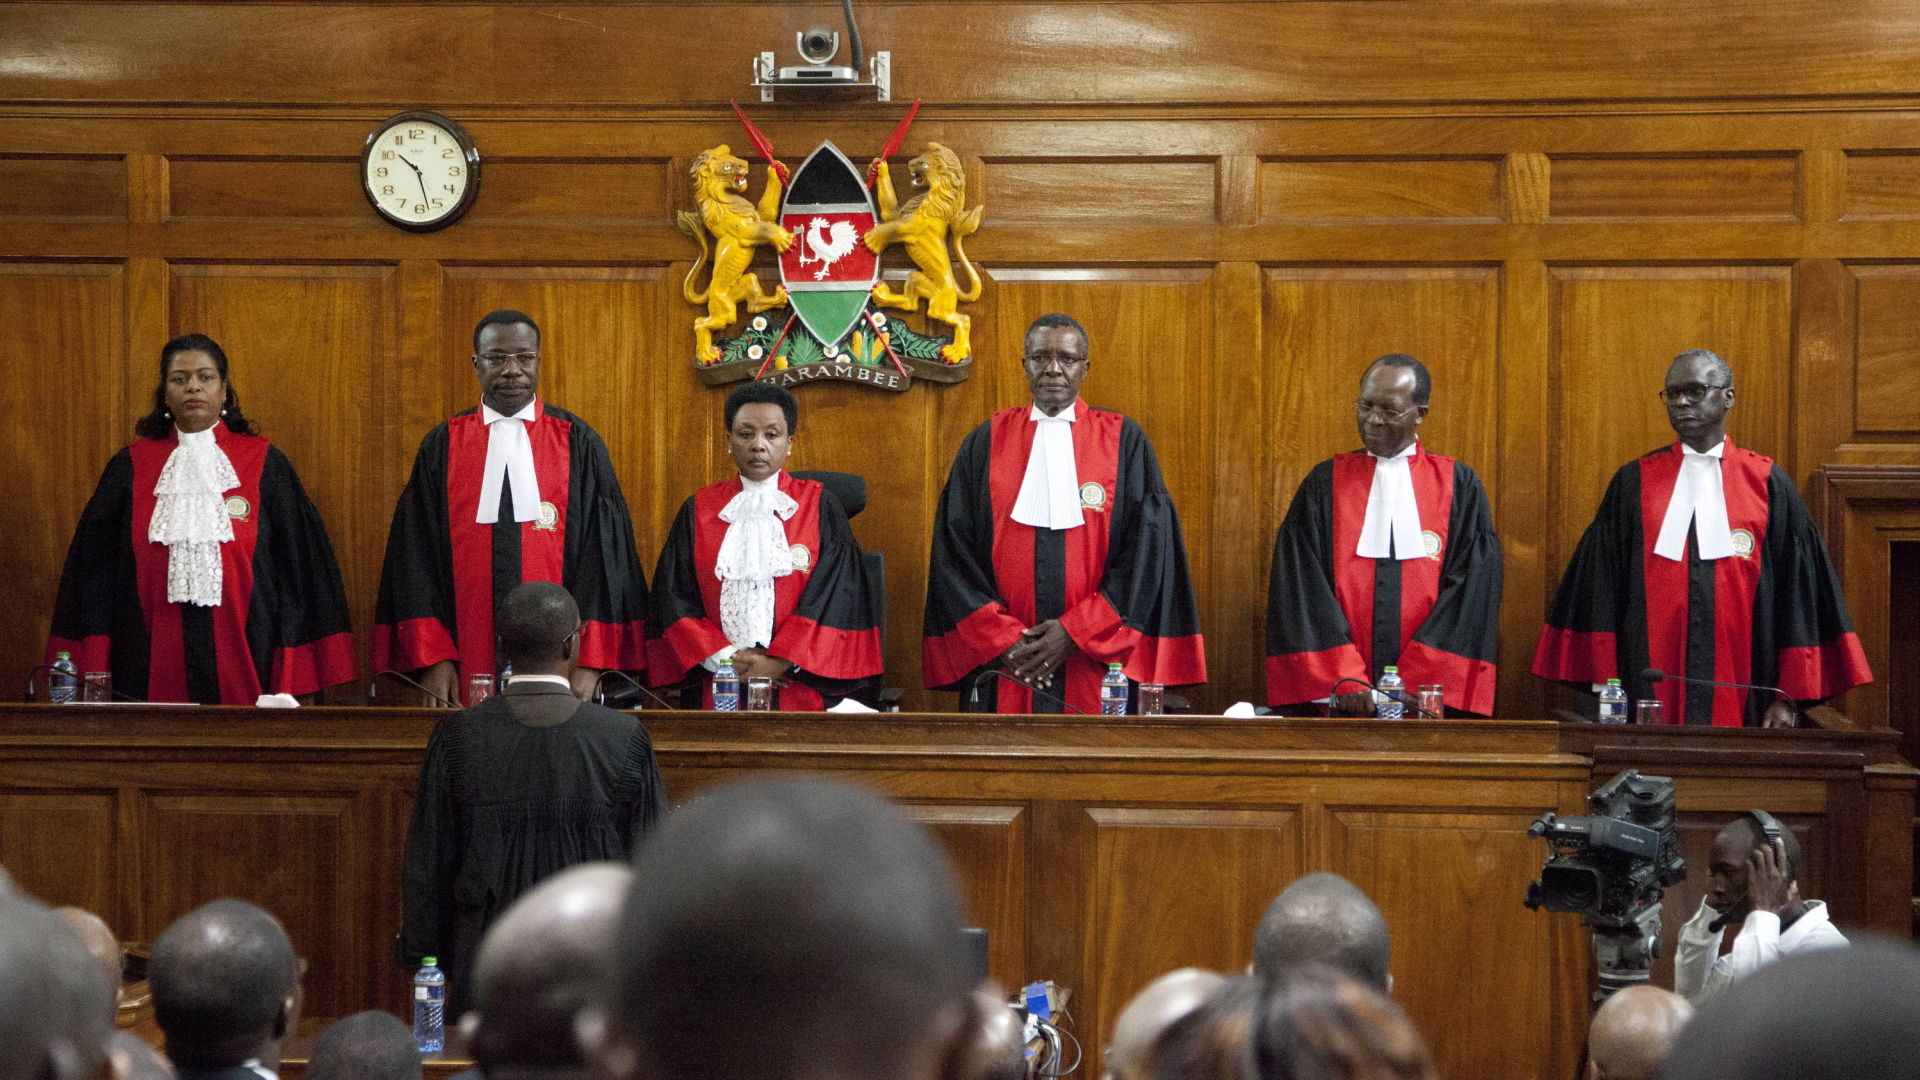 Die Richter des obersten Gerichts in Kenia stehen hinter der Richterbank | dpa